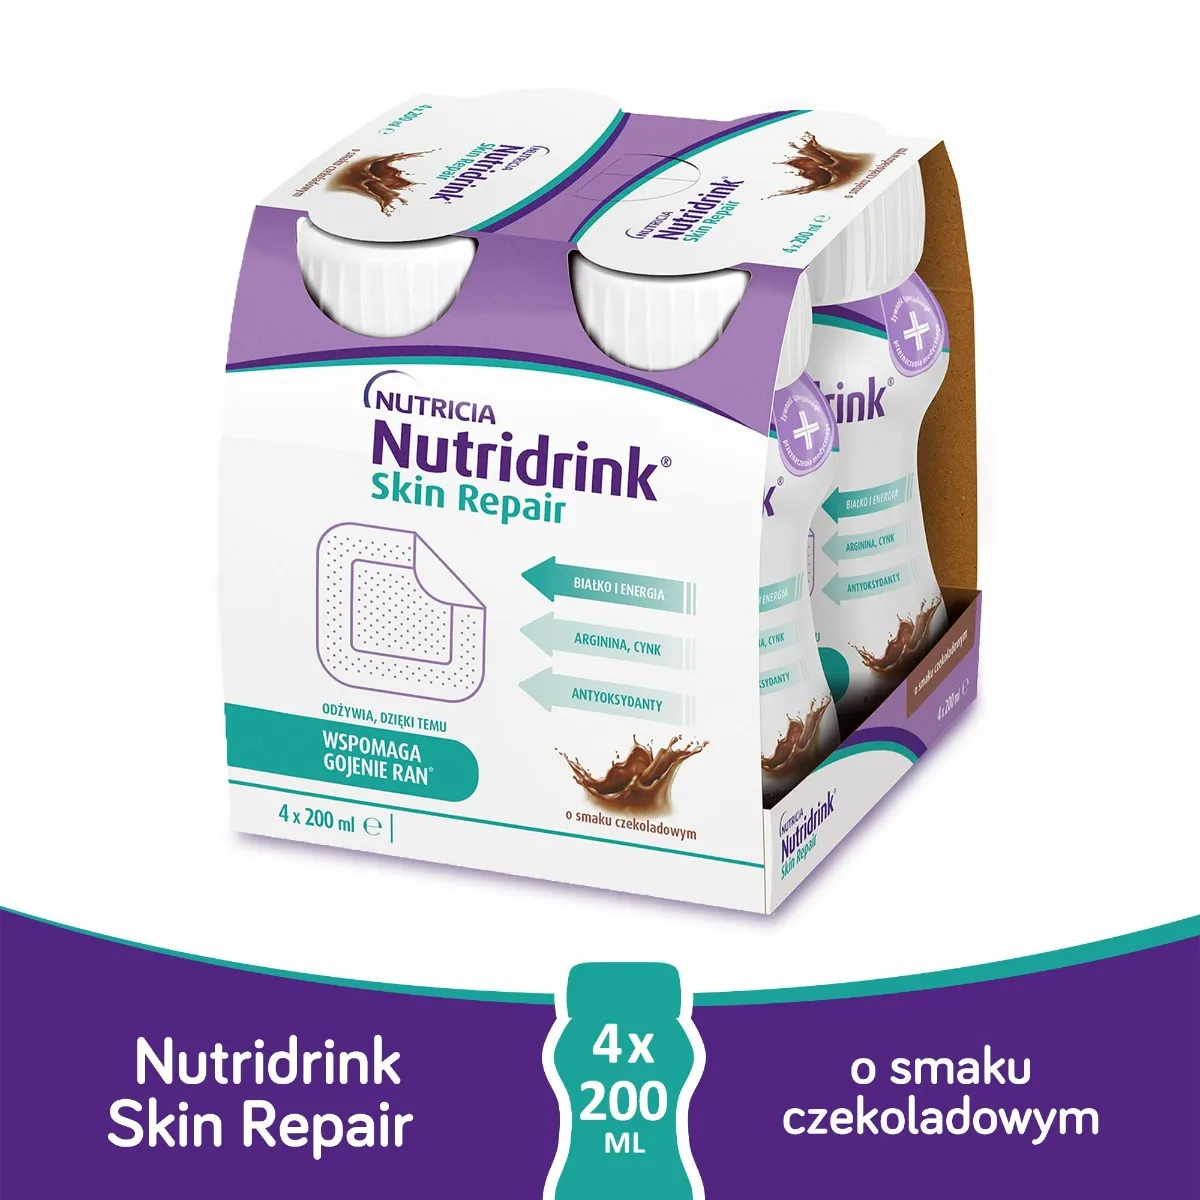 Nutridrink Skin Repair, o smaku czekoladowym, 4 x 200 ml